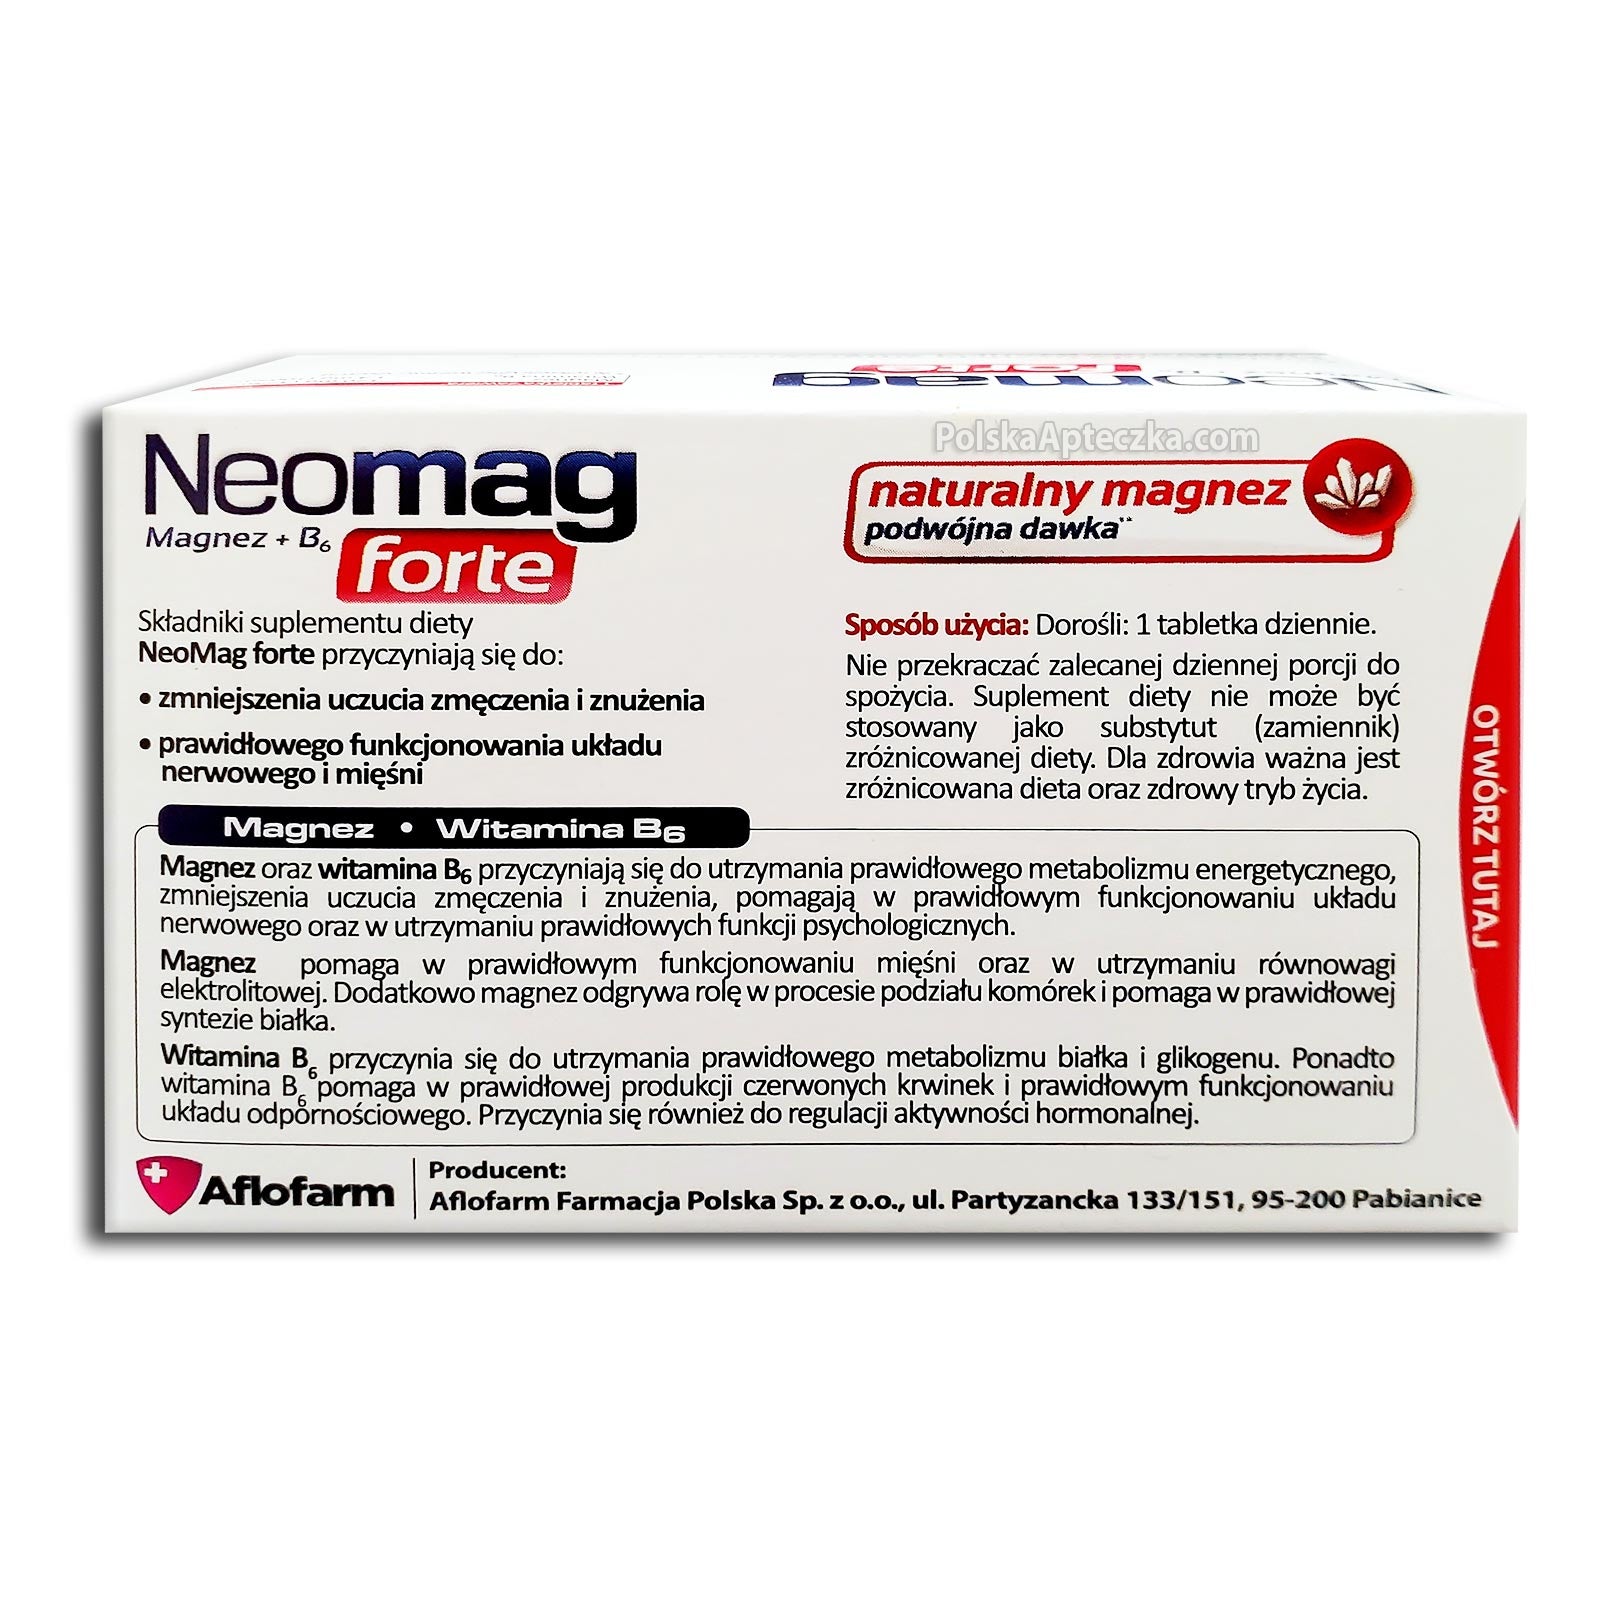 Neomag Forte 50 tablets, Aflofarm